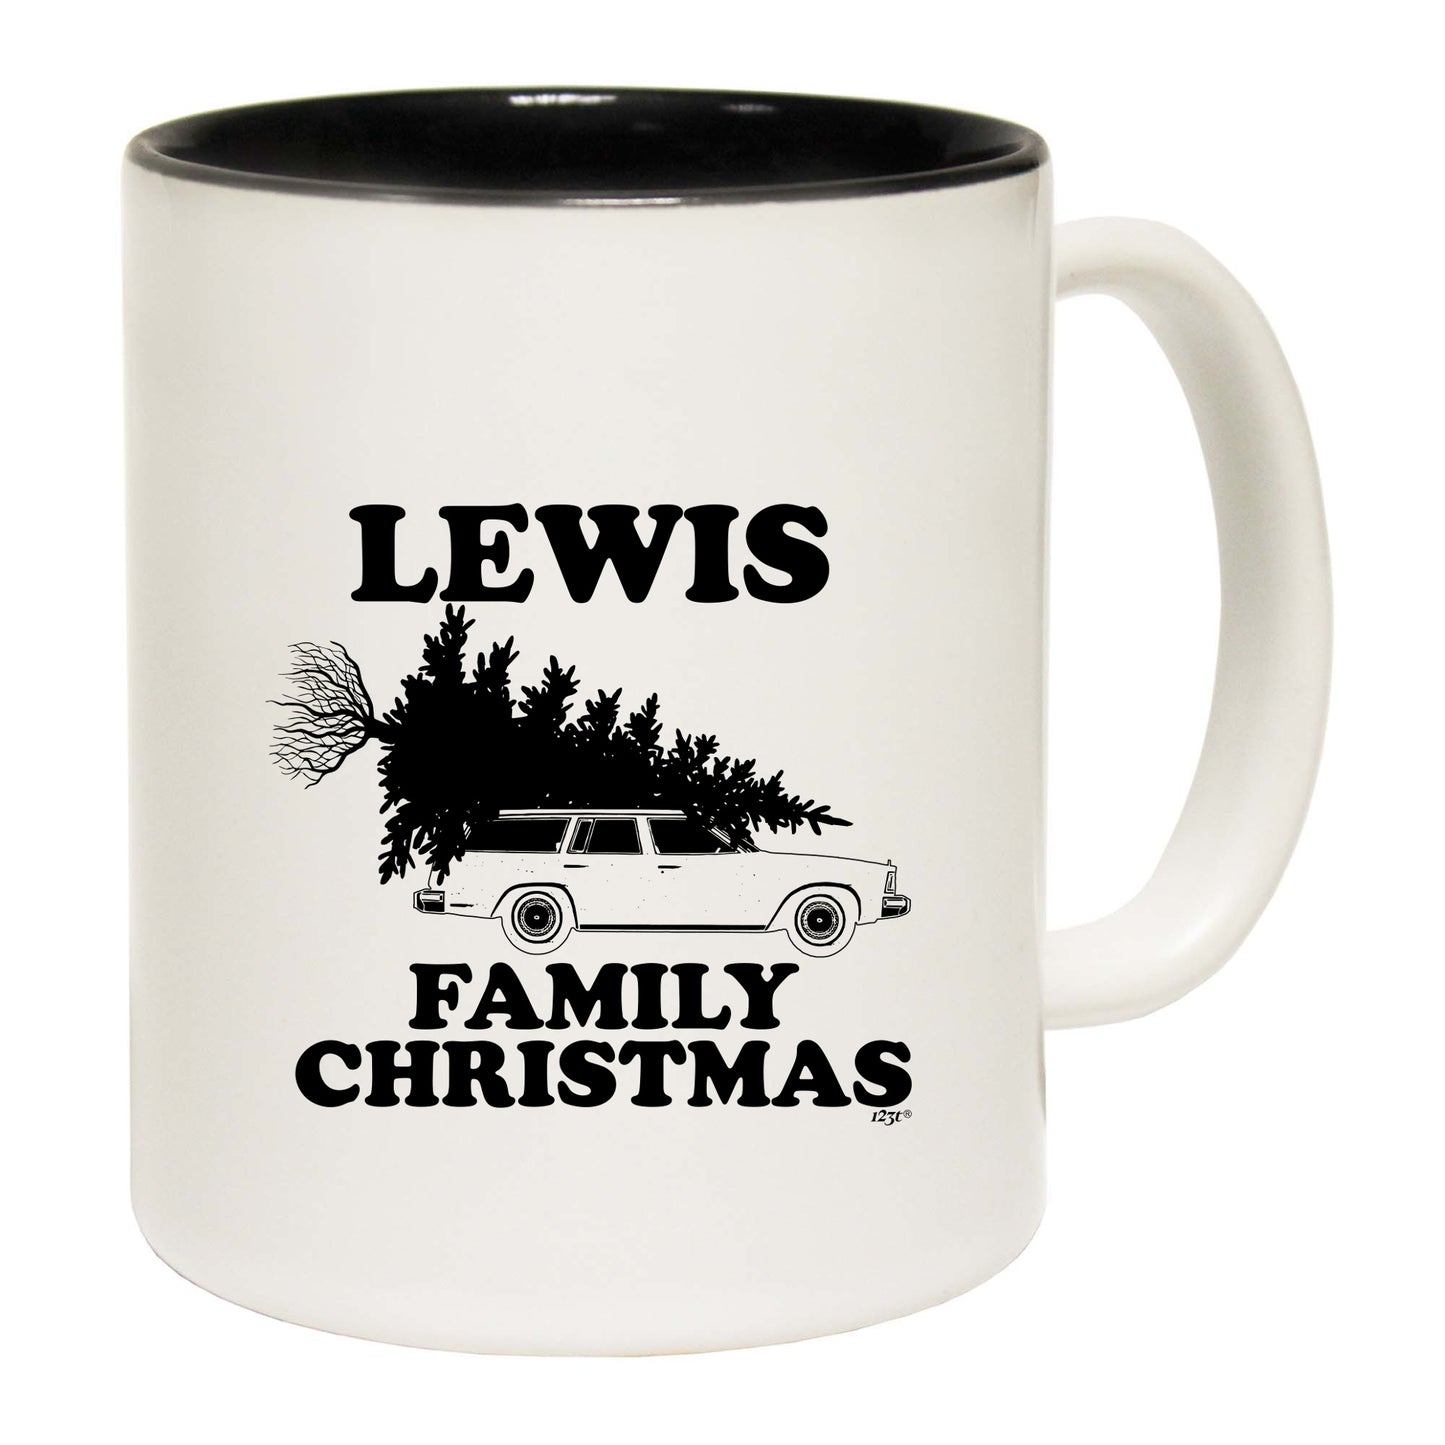 The Christmas Hub - Family Christmas Lewis - Funny Coffee Mug